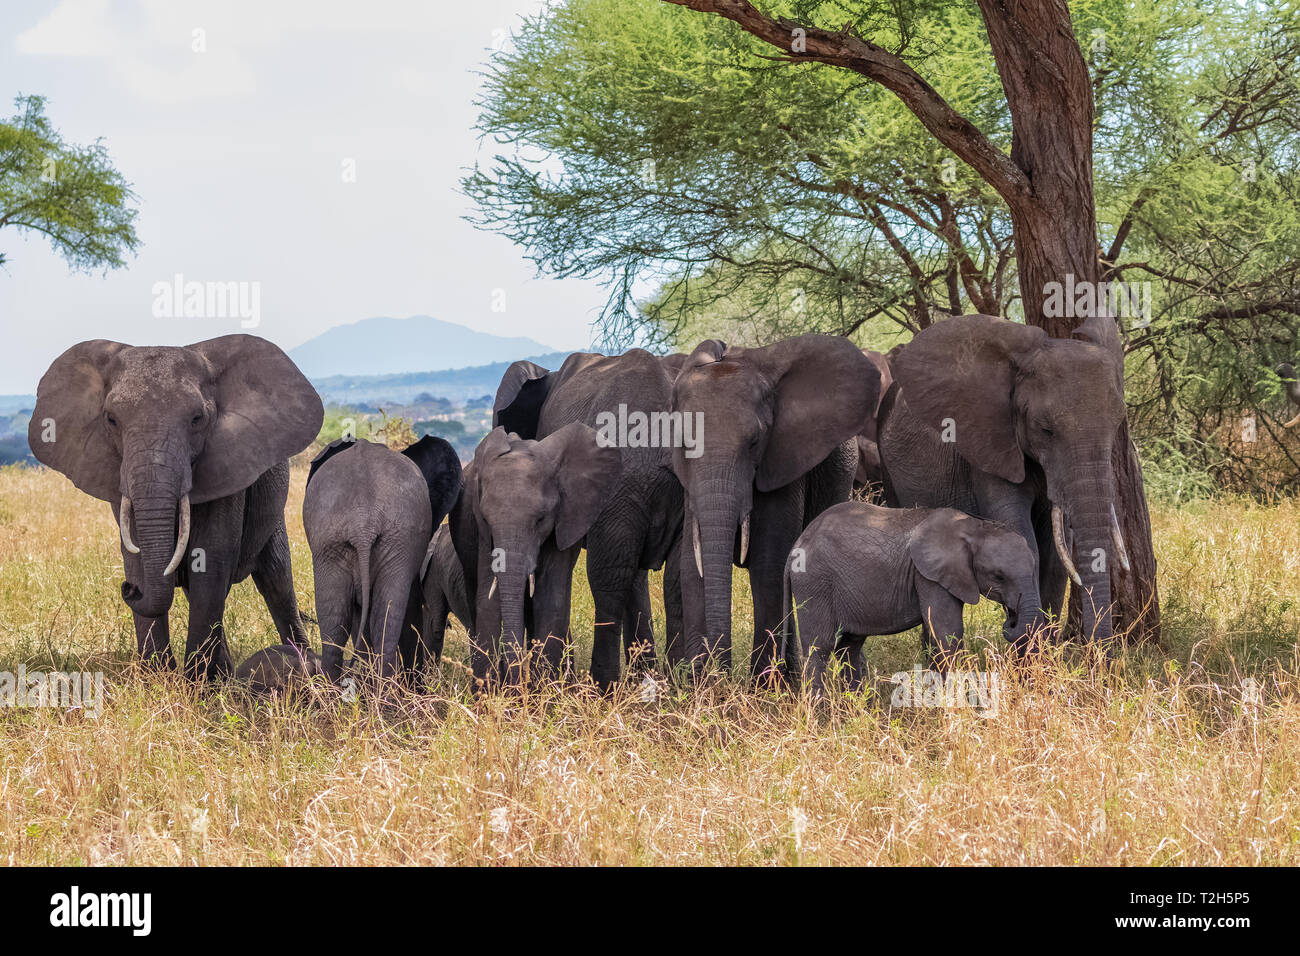 L'éléphant est le plus grand mammifère terrestre. Avec sa trompe, il peut non seulement l'odeur, mais aussi se sentir et comprendre. Les éléphants ont un comportement social. Banque D'Images